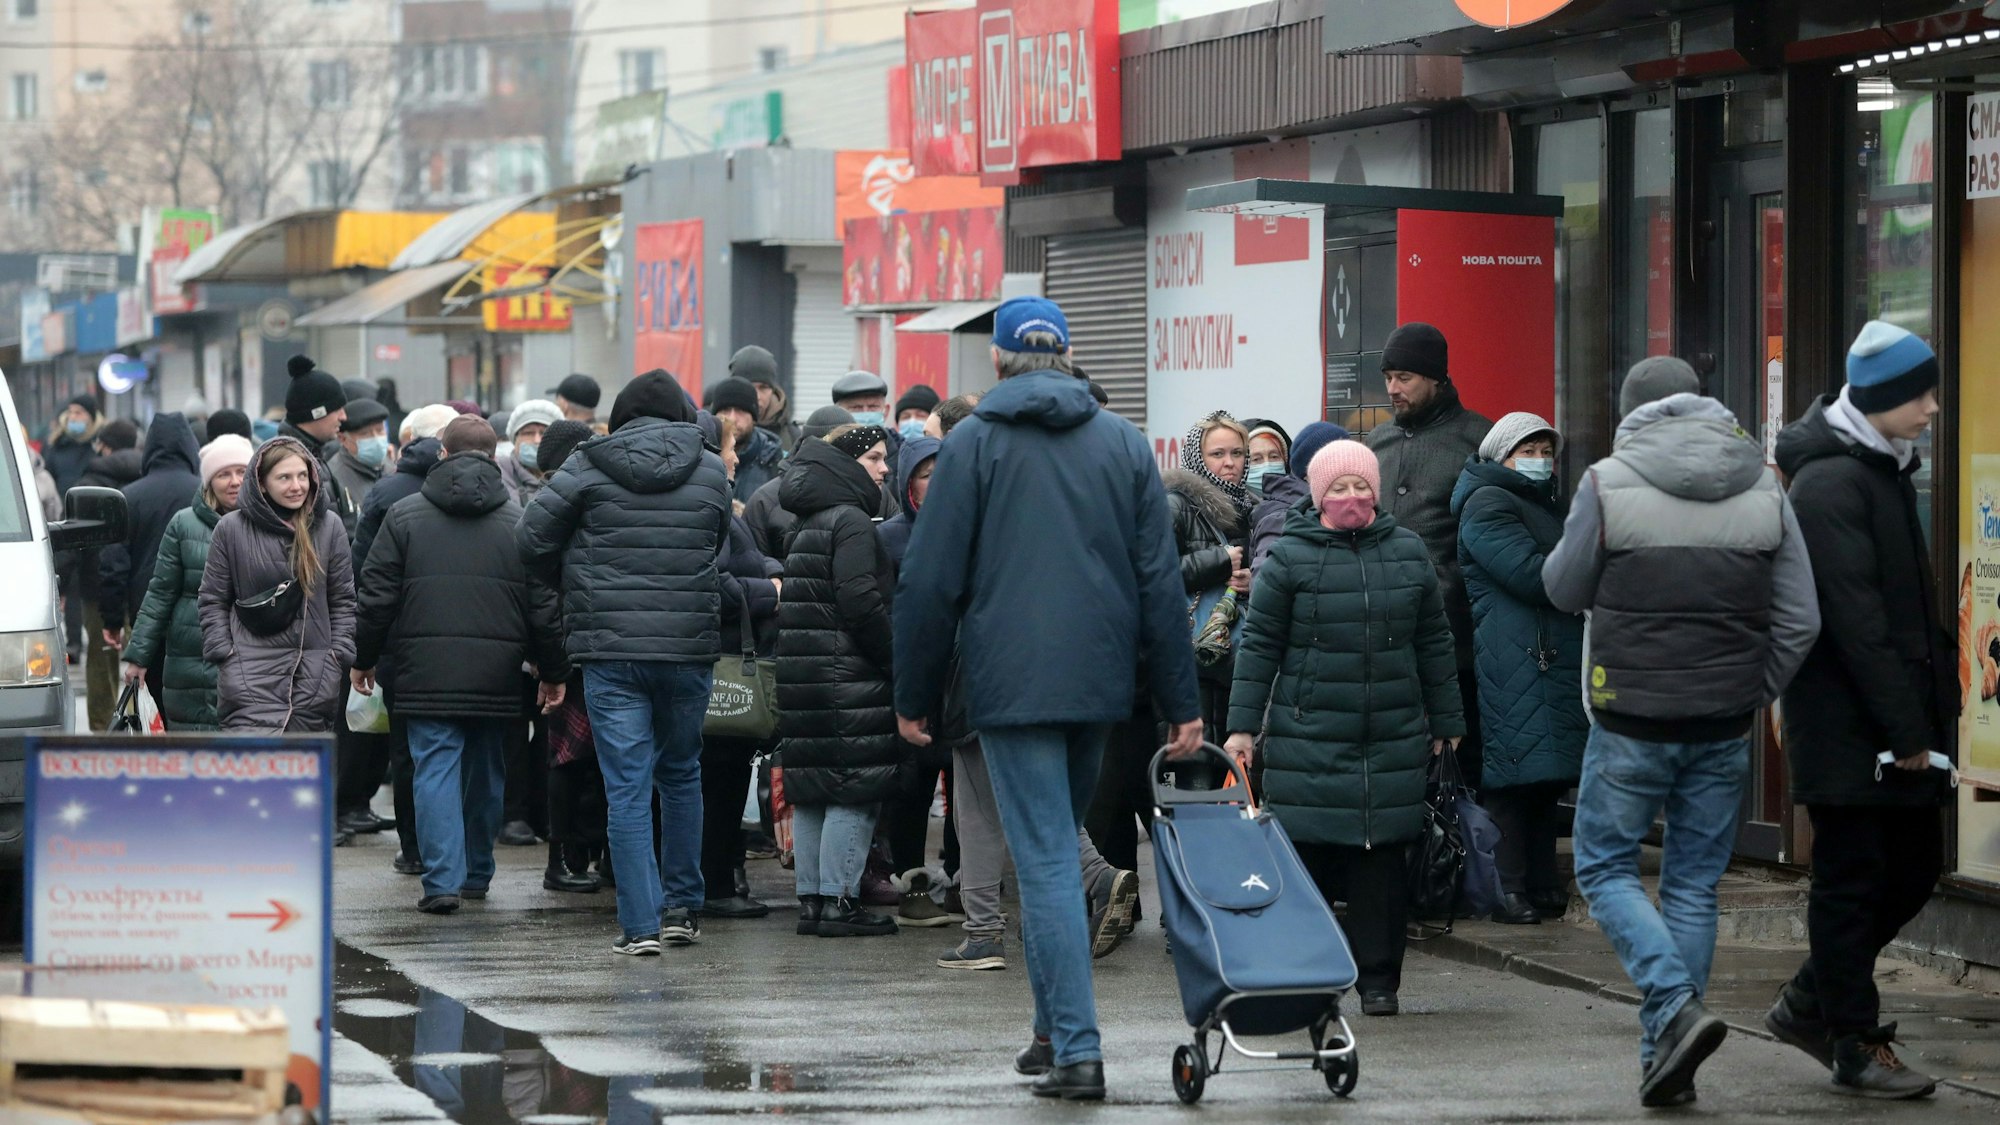 Menschen stehen in einer Schlange vor einem Lebensmittelladen. Viele haben Einkaufstüten und Taschen dabei.